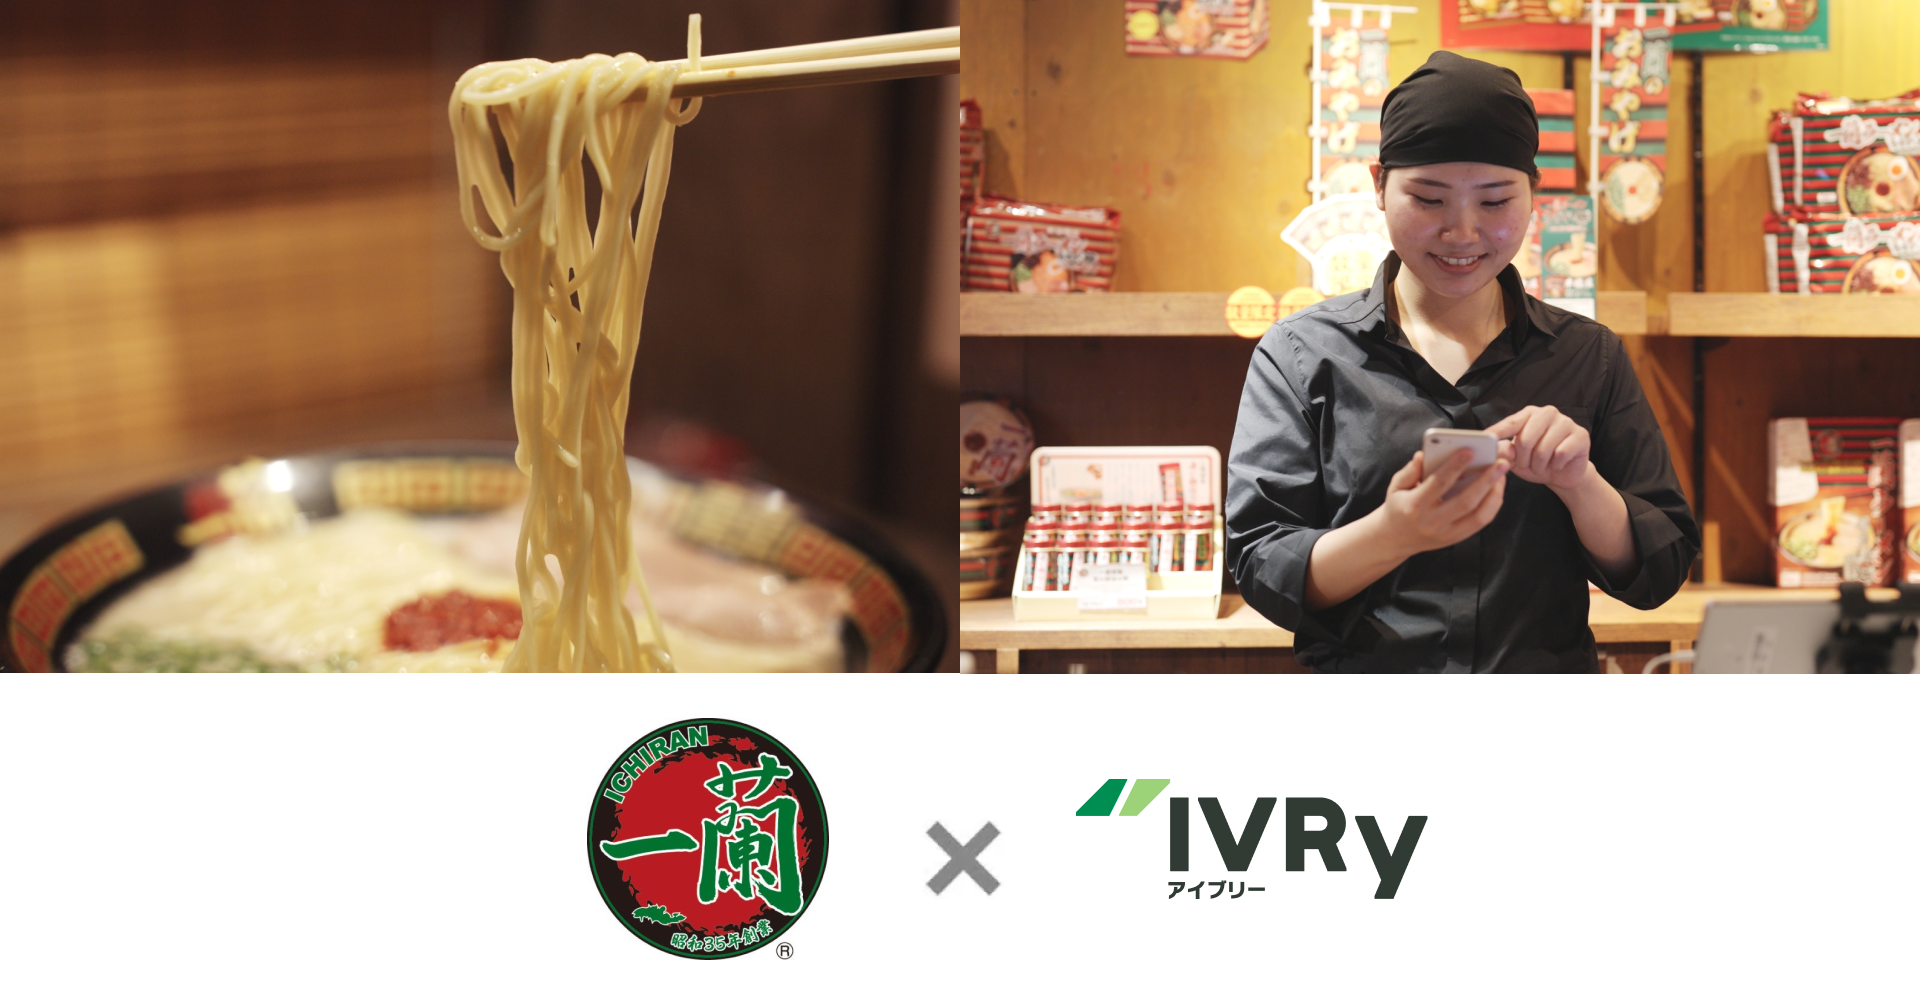 一蘭が電話自動応答サービス「IVRy」を国内全78店に導入。業務効率化に向けた電話DXの取り組みを推進